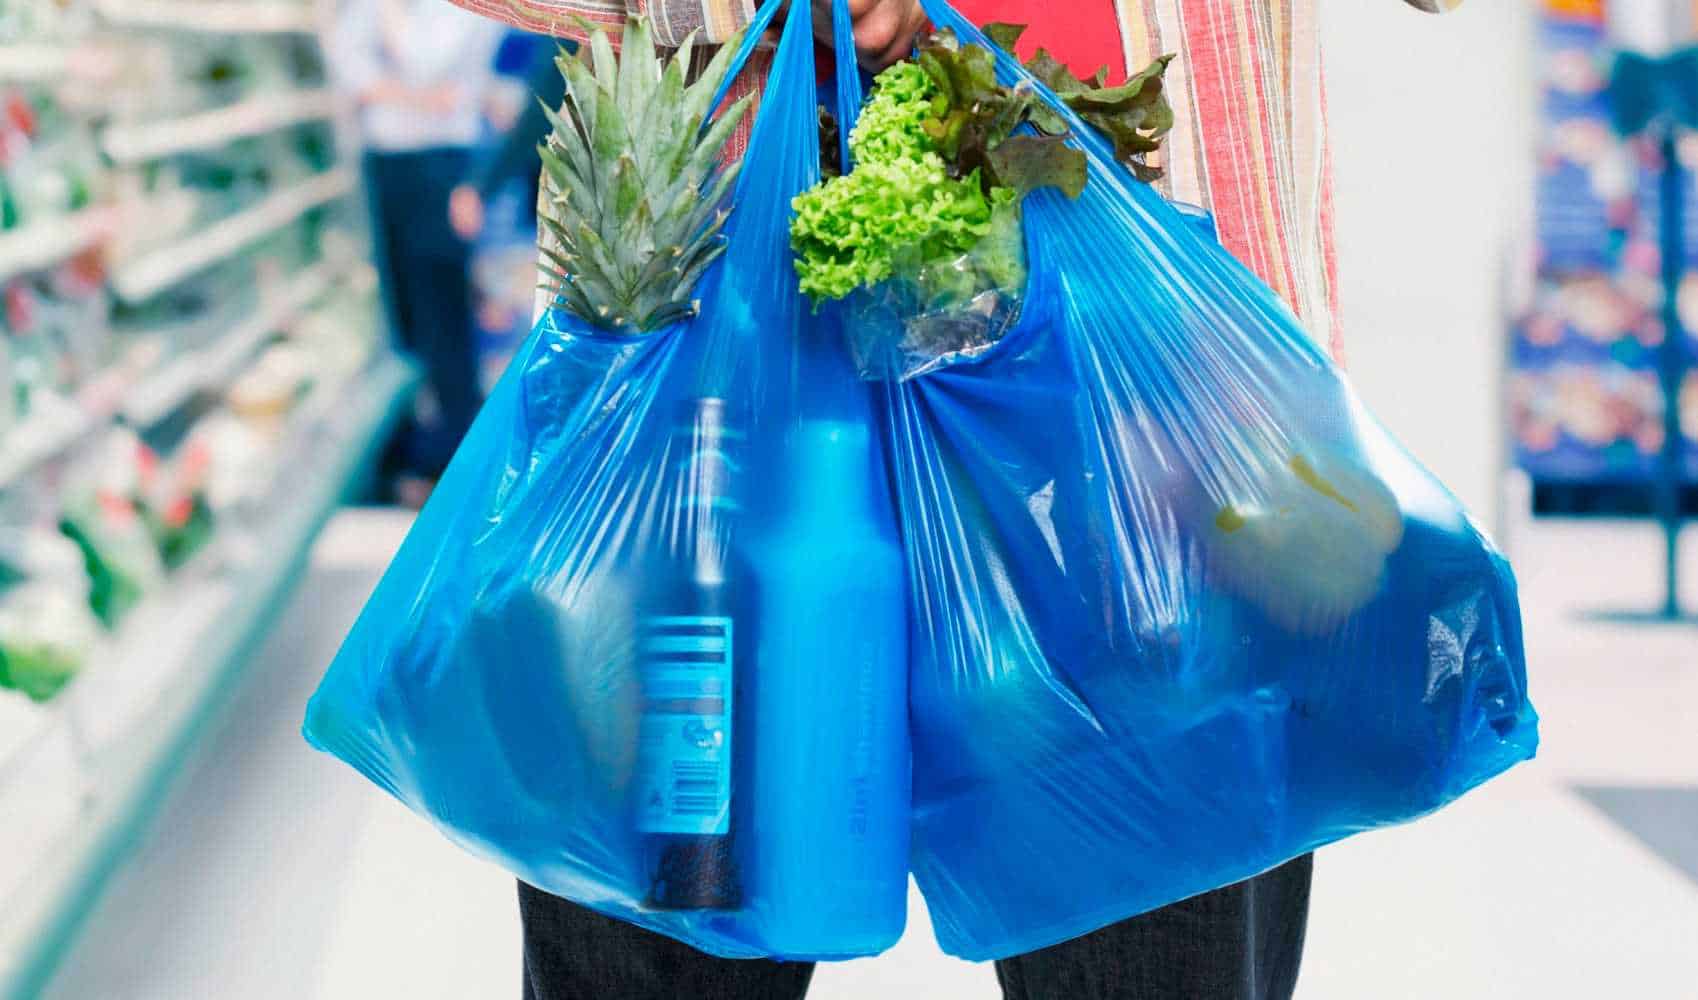 El 1 de agosto entra en vigor en Querétaro el reglamento municipal para prohibir bolsas de plástico. Foto: Internet.